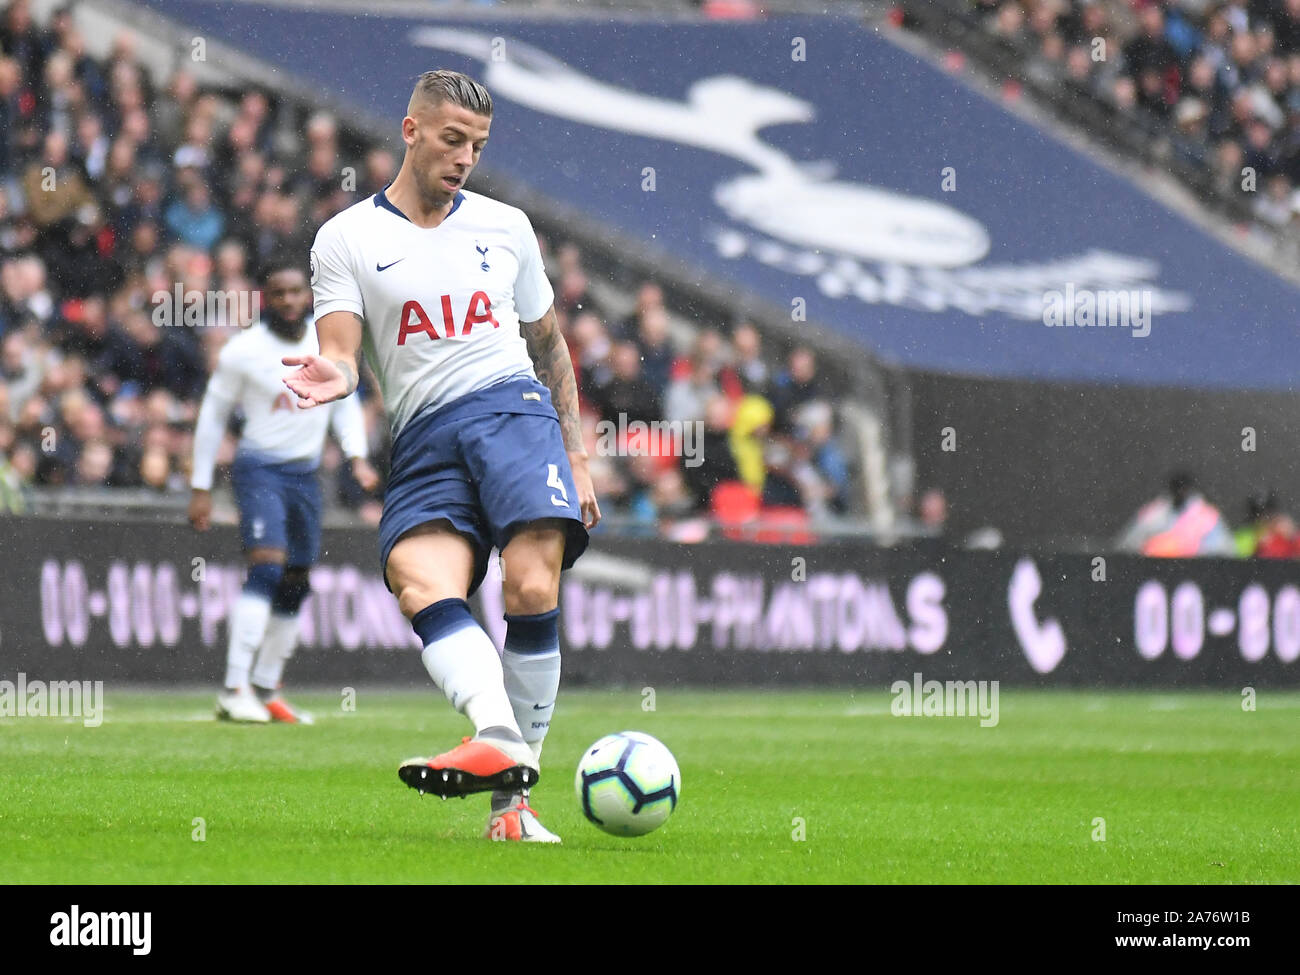 Londra, Inghilterra - Ottobre 6, 2018: Toby Alderweireld di Tottenham mostrato durante il 2018/19 English Premier League tra Tottenham Hotspur e Cardiff City a Wembley Stadium. Foto Stock